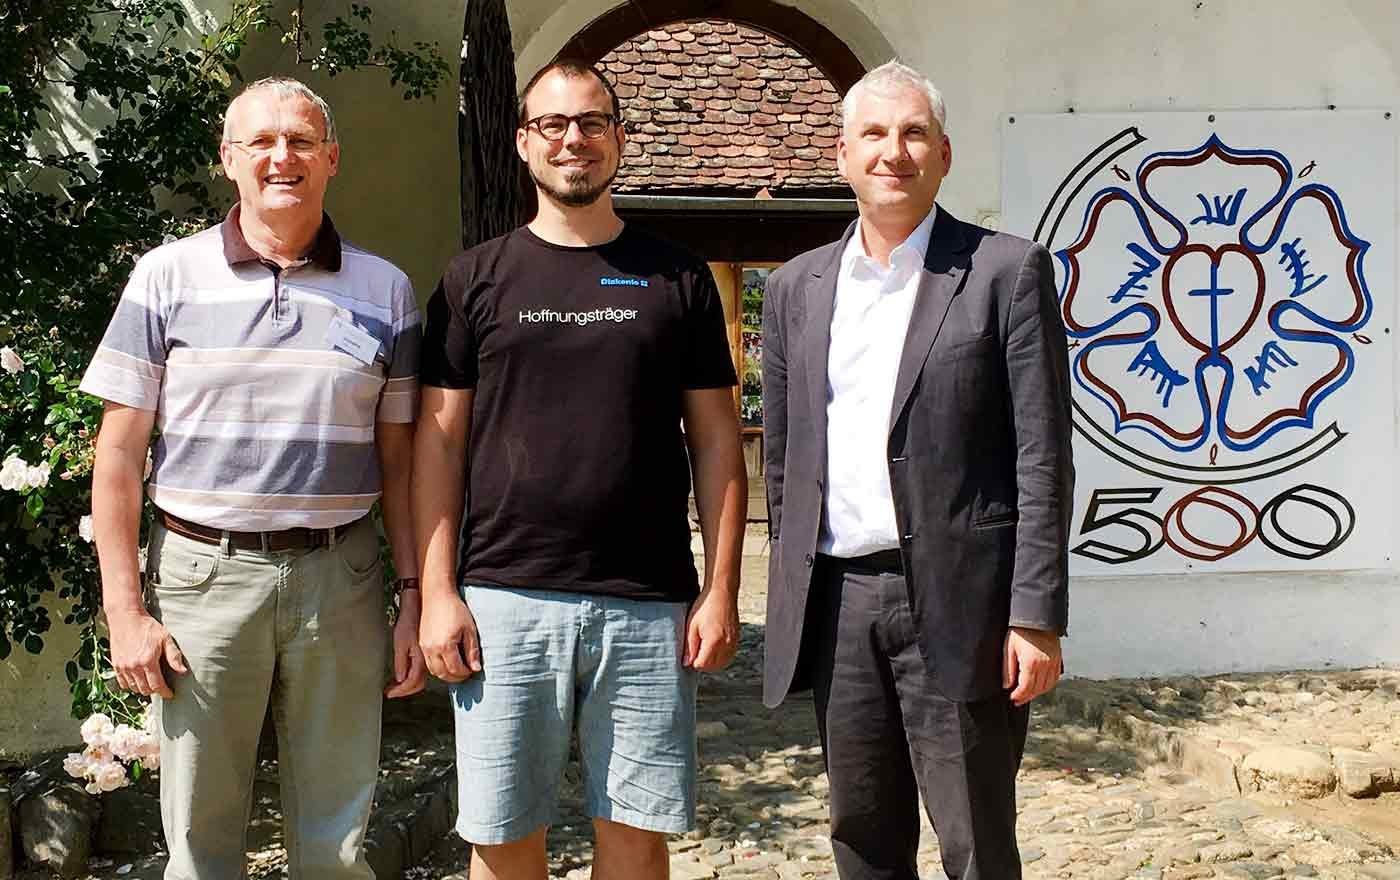 Pfarrer Hans Hubmer, Pastor Martin Siegrist und Landessuperintendent Thomas Hennefeld (v.l.) auf Besuch in Rumänien. (Foto: emk.at/blog)